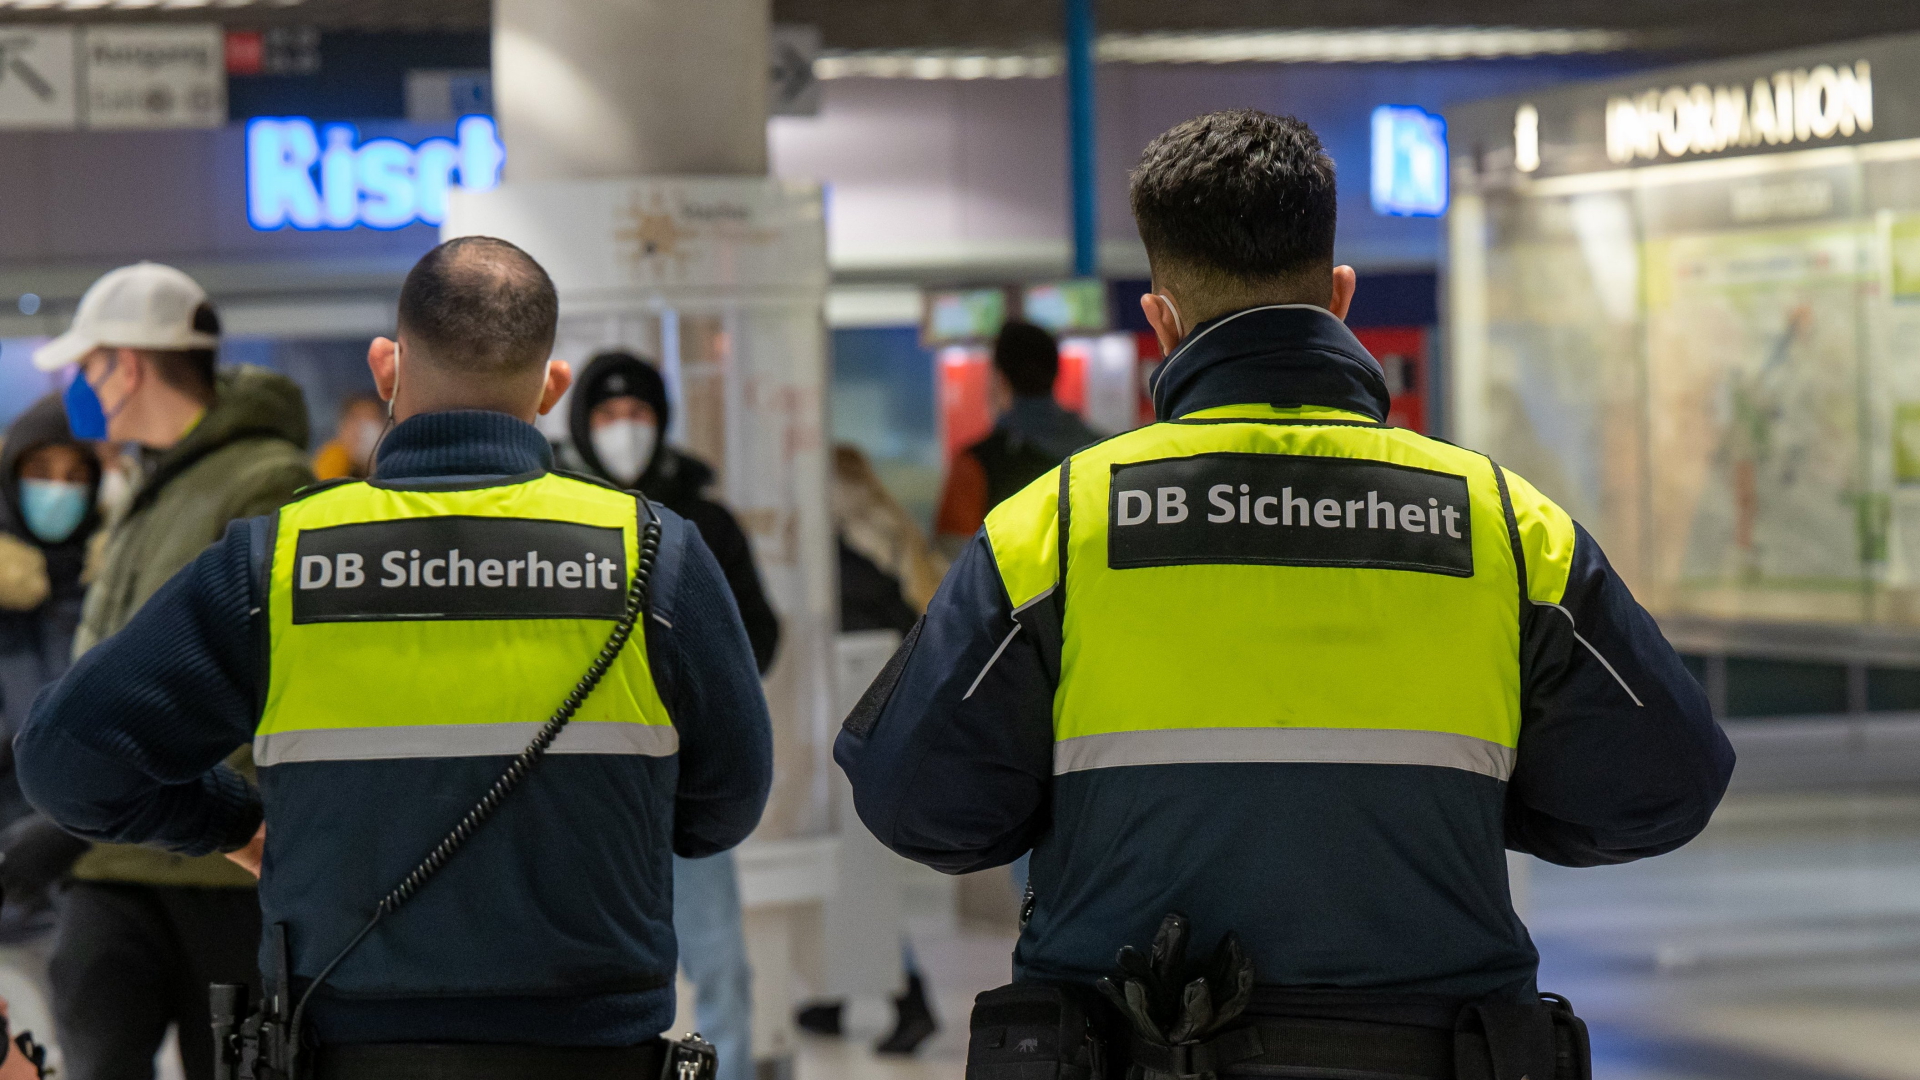 Mitarbeiter der DB Sicherheit der Bahn stehen in einem Bahnhof | dpa